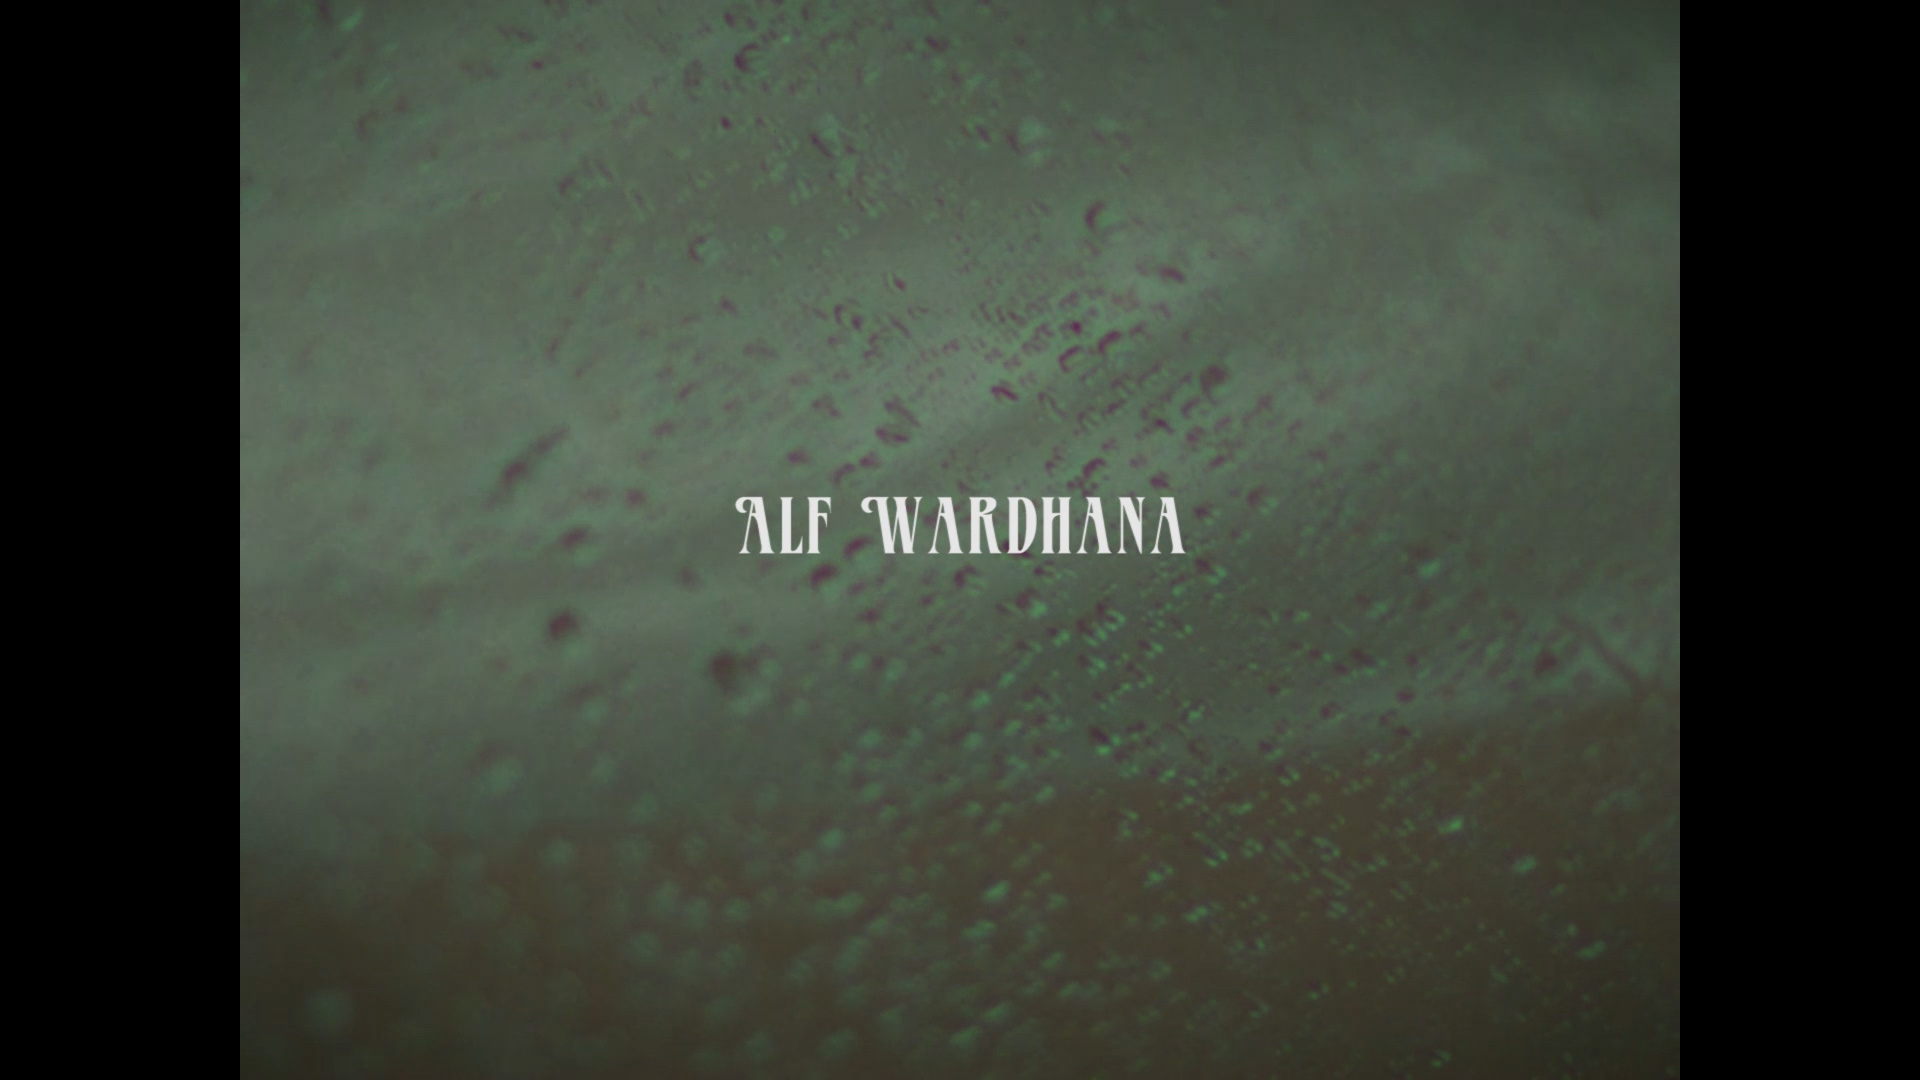 Rainy Days - Alf Wardhana